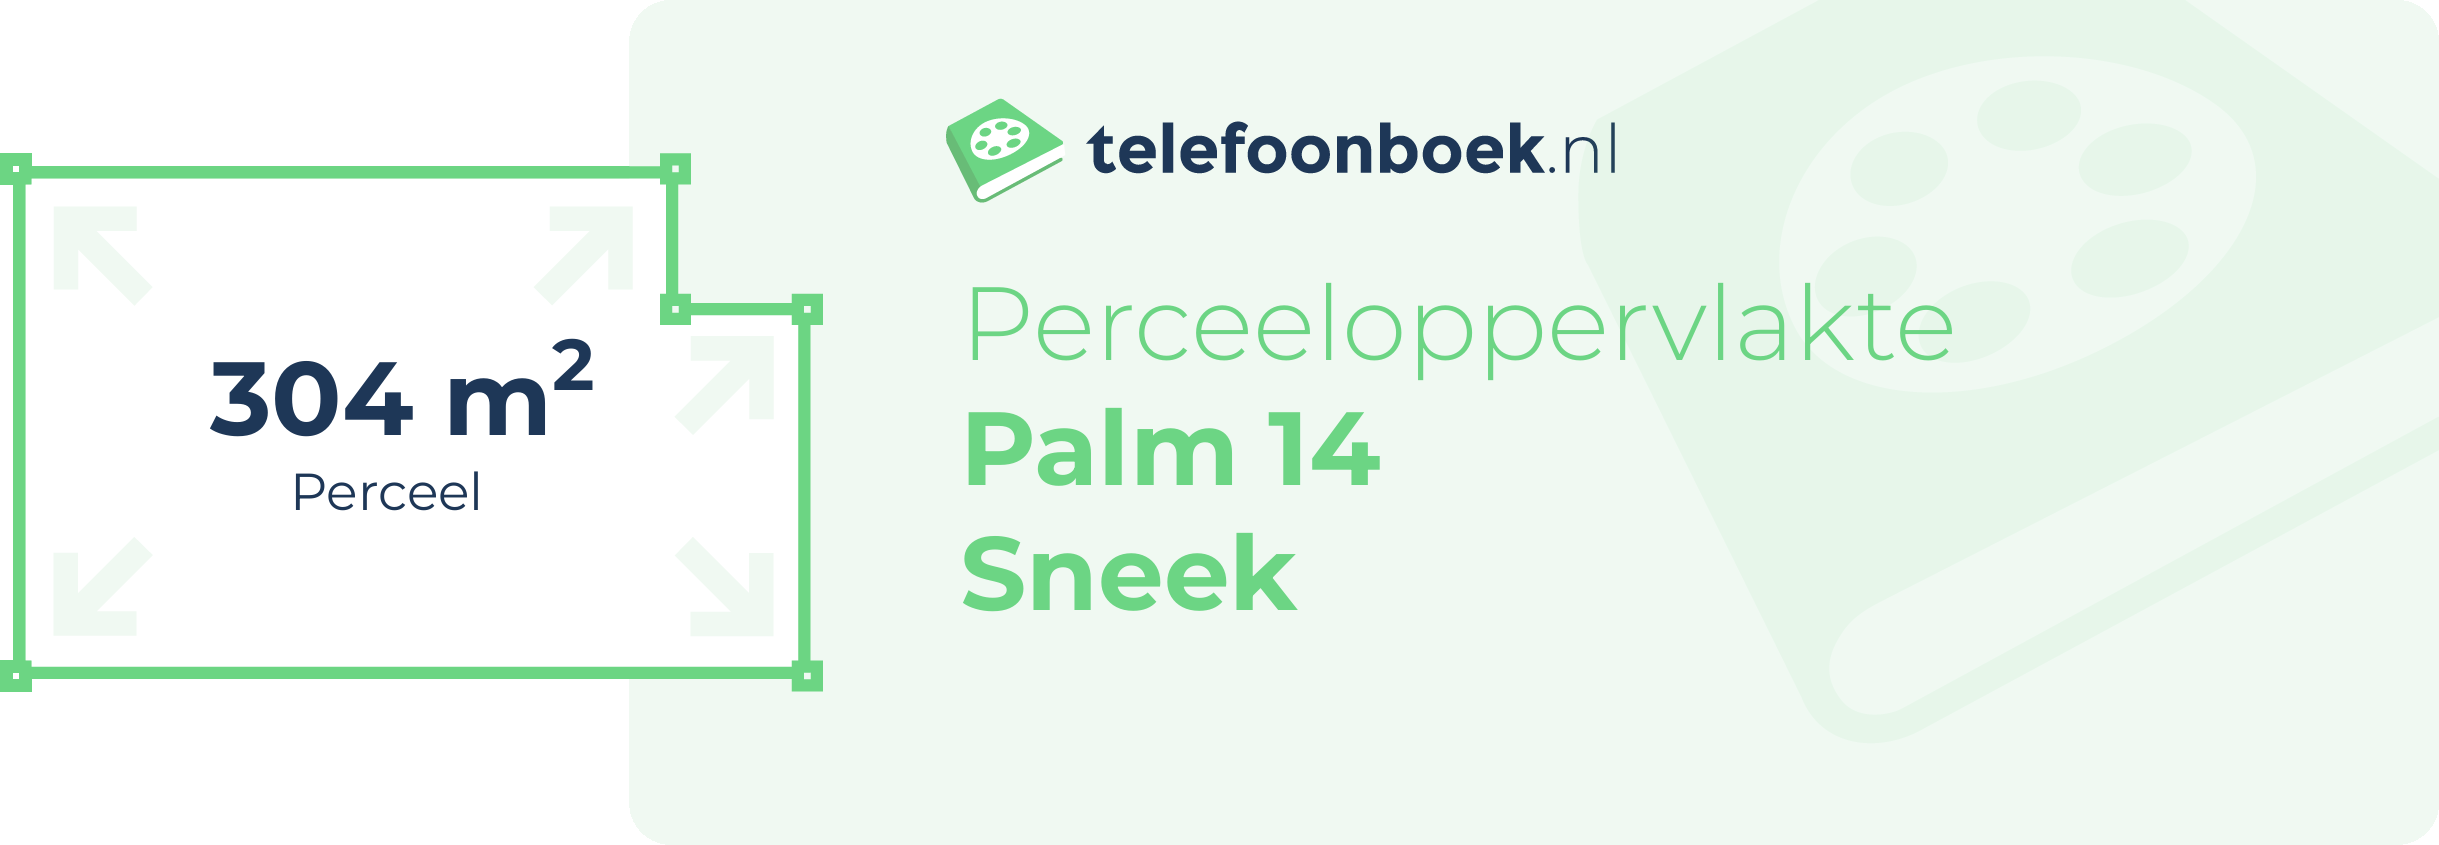 Perceeloppervlakte Palm 14 Sneek